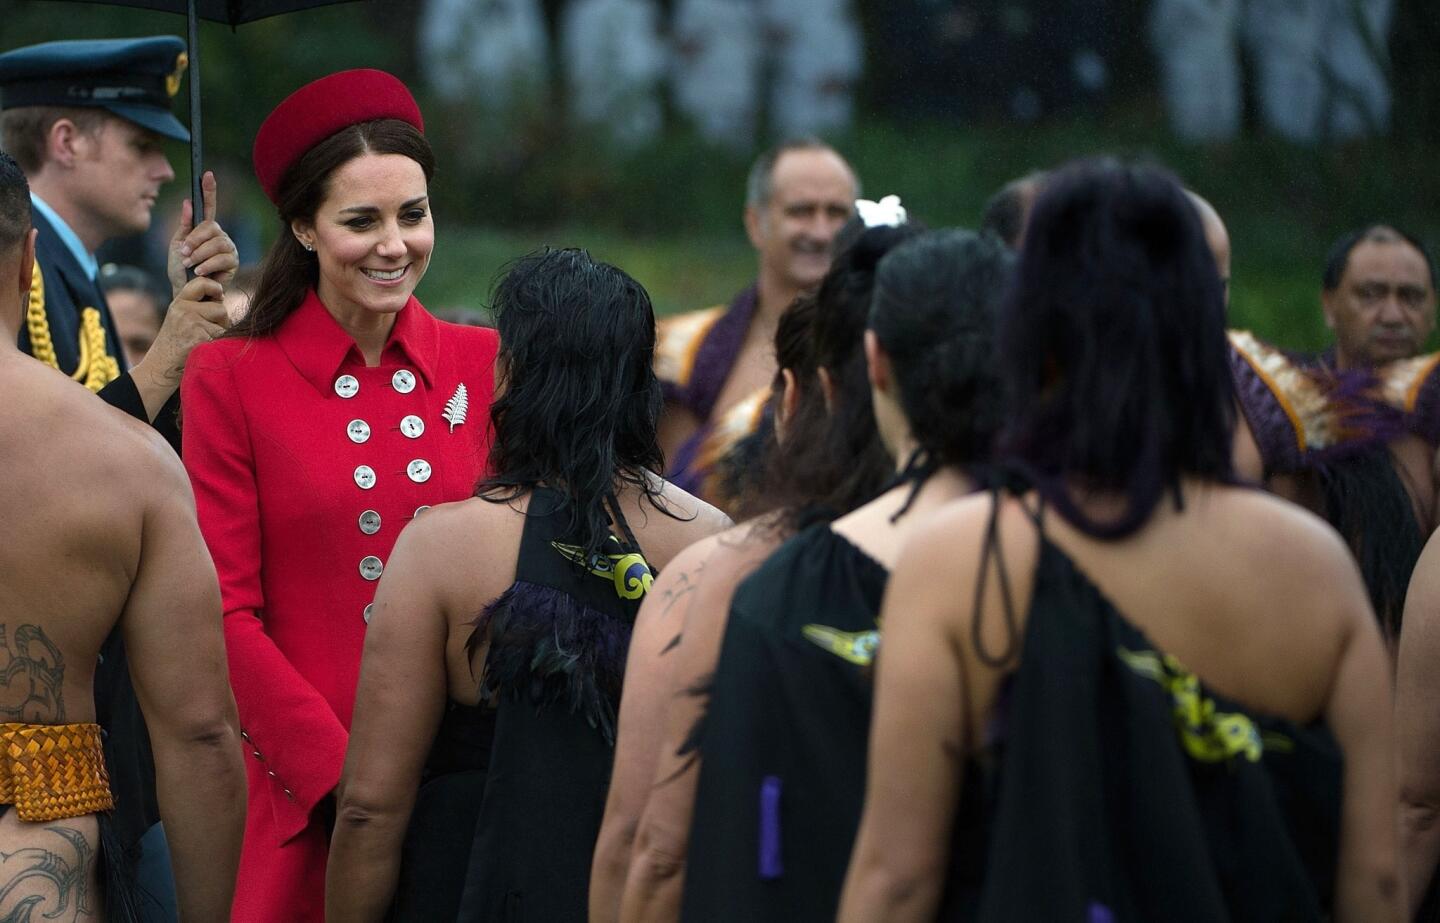 Royal visit to New Zealand